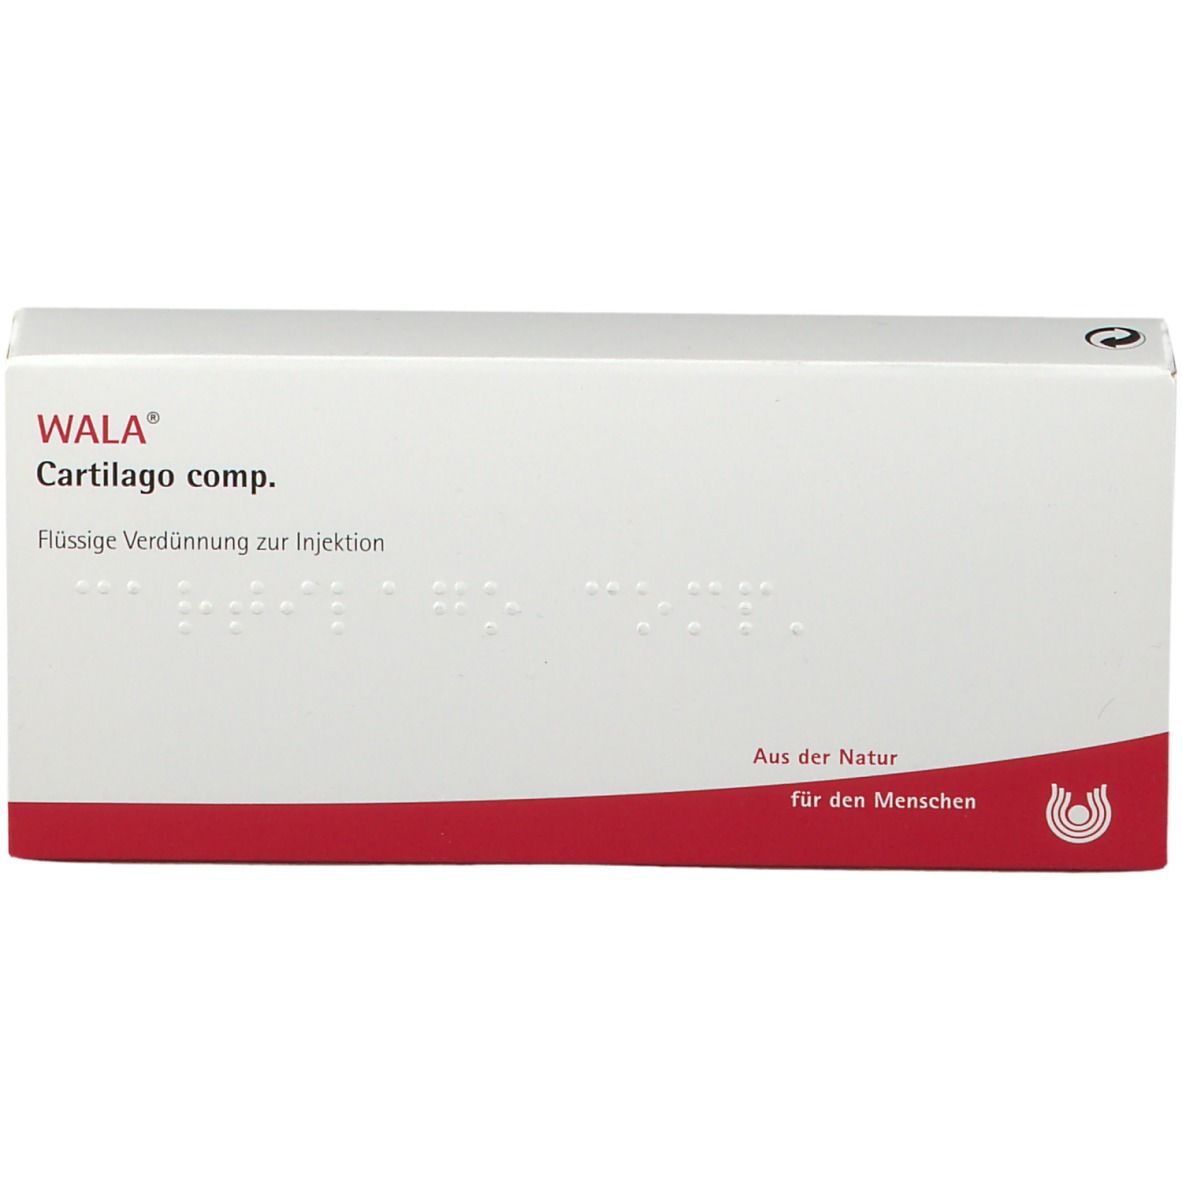 WALA® Cartilago Comp. Amp.